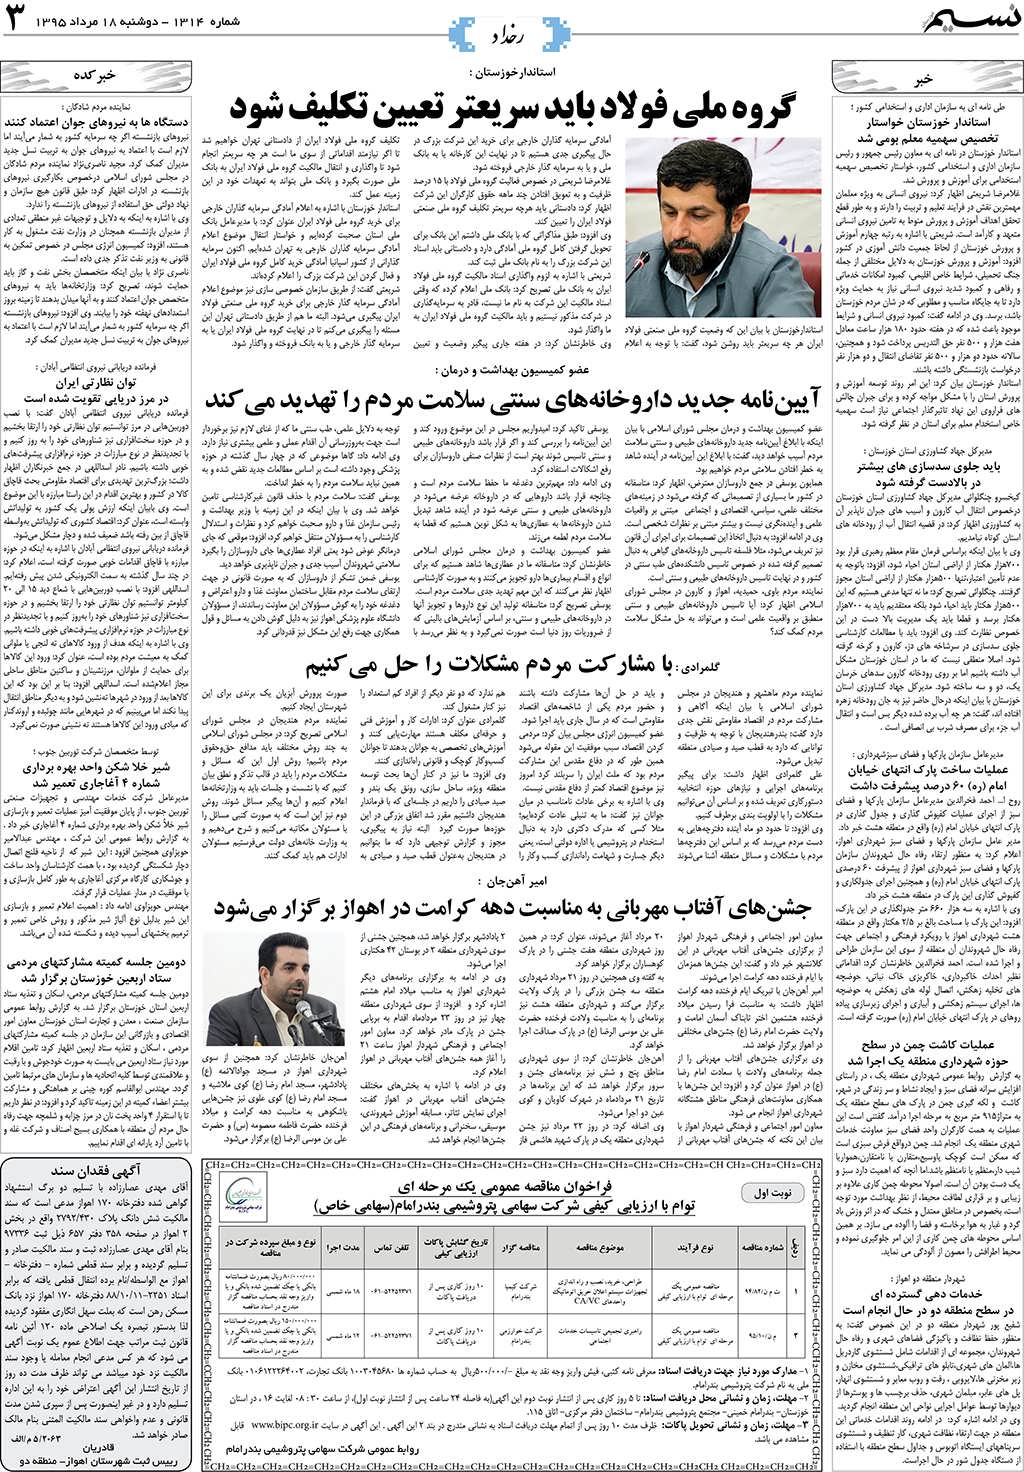 صفحه رخداد روزنامه نسیم شماره 1314